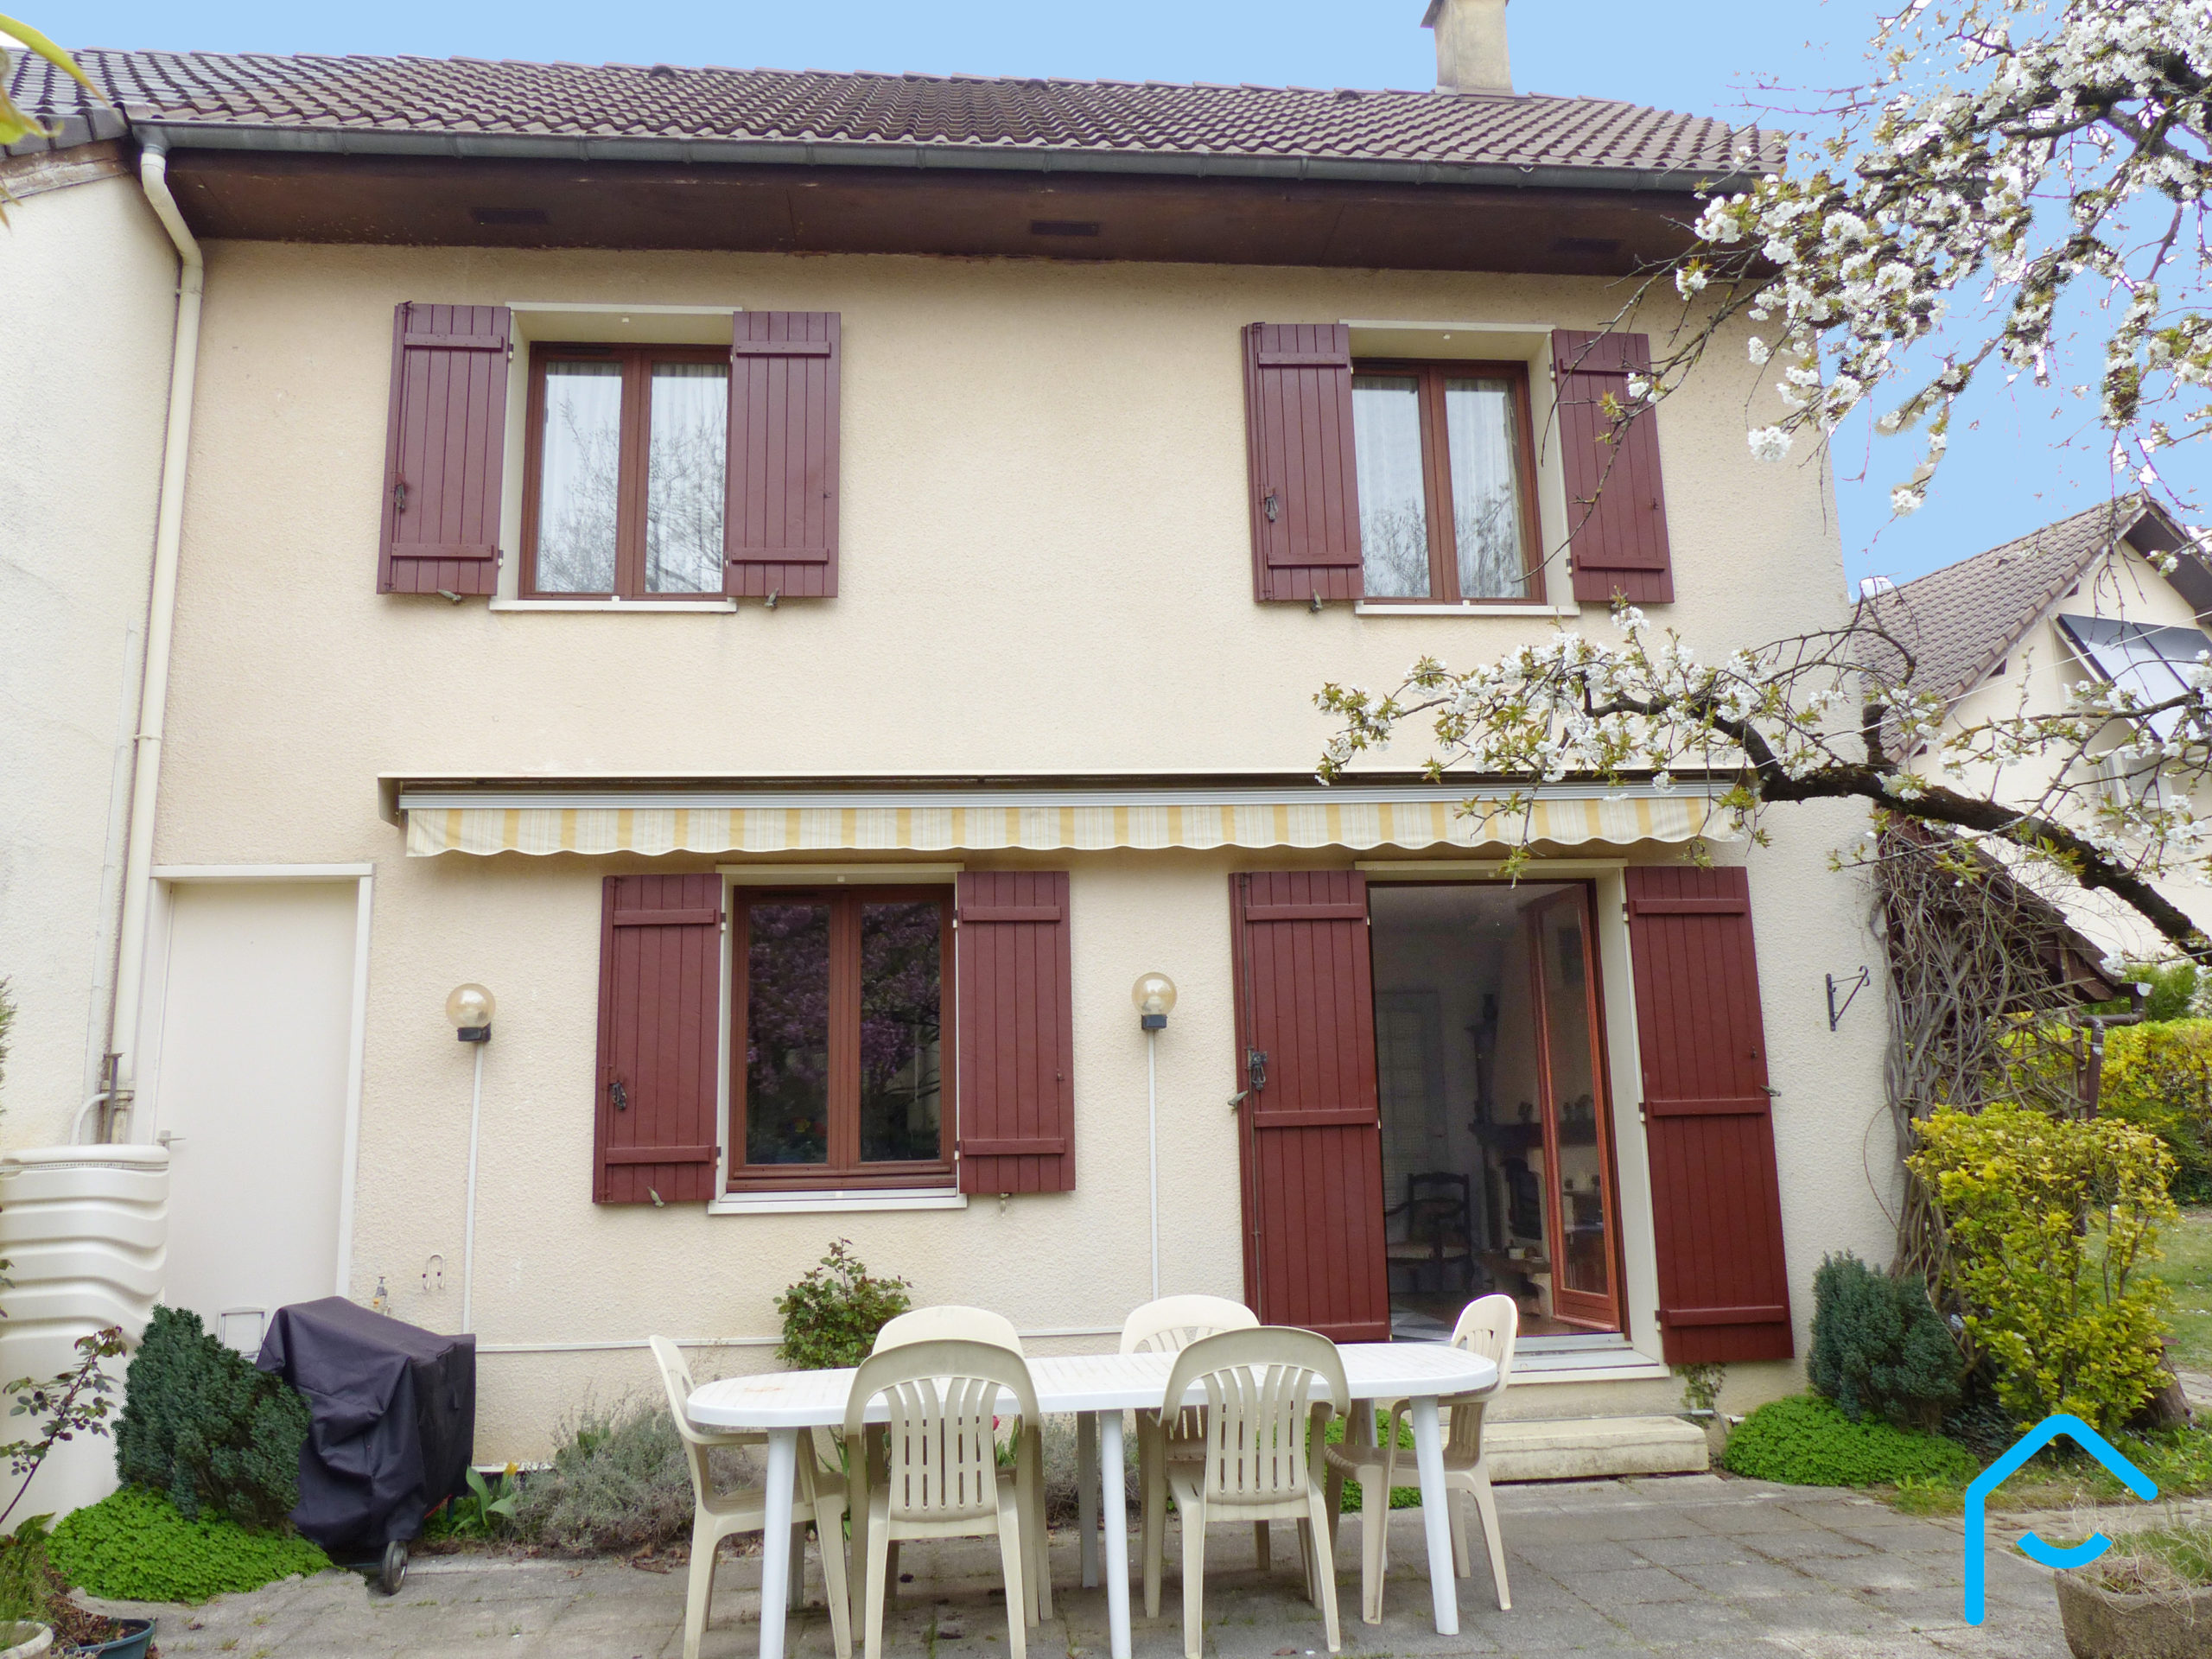 A vendre maison Chambéry Savoie jardin 3 chambres garage vue 1